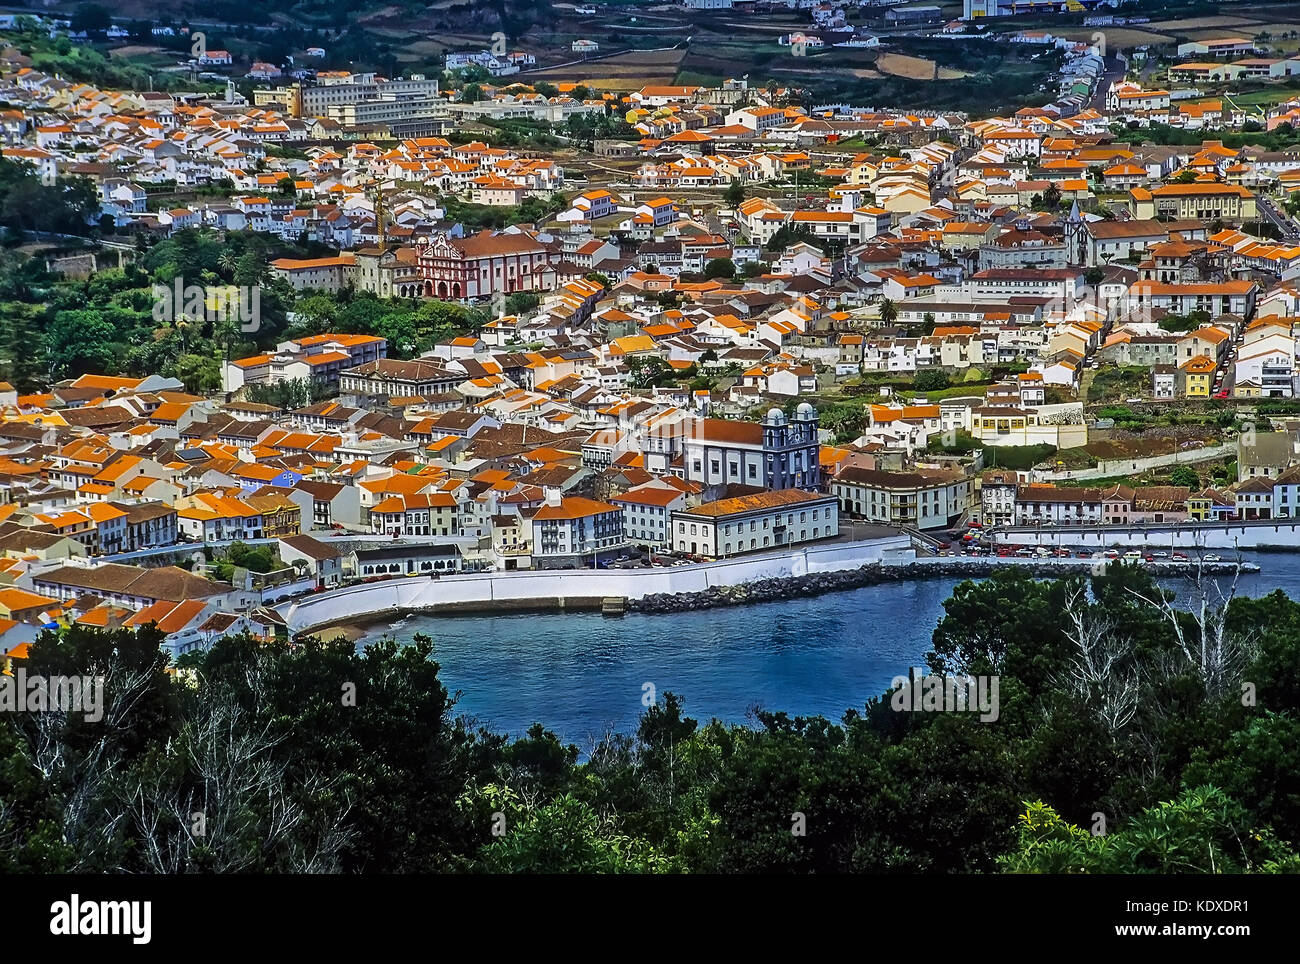 Vista in elevazione di Angra do Heroismo (città di Heros), la capitale dell'isola Terceira nelle Azzorre e un sito del Patrimonio Mondiale, dalla cima di Monte del Brasile. Foto Stock